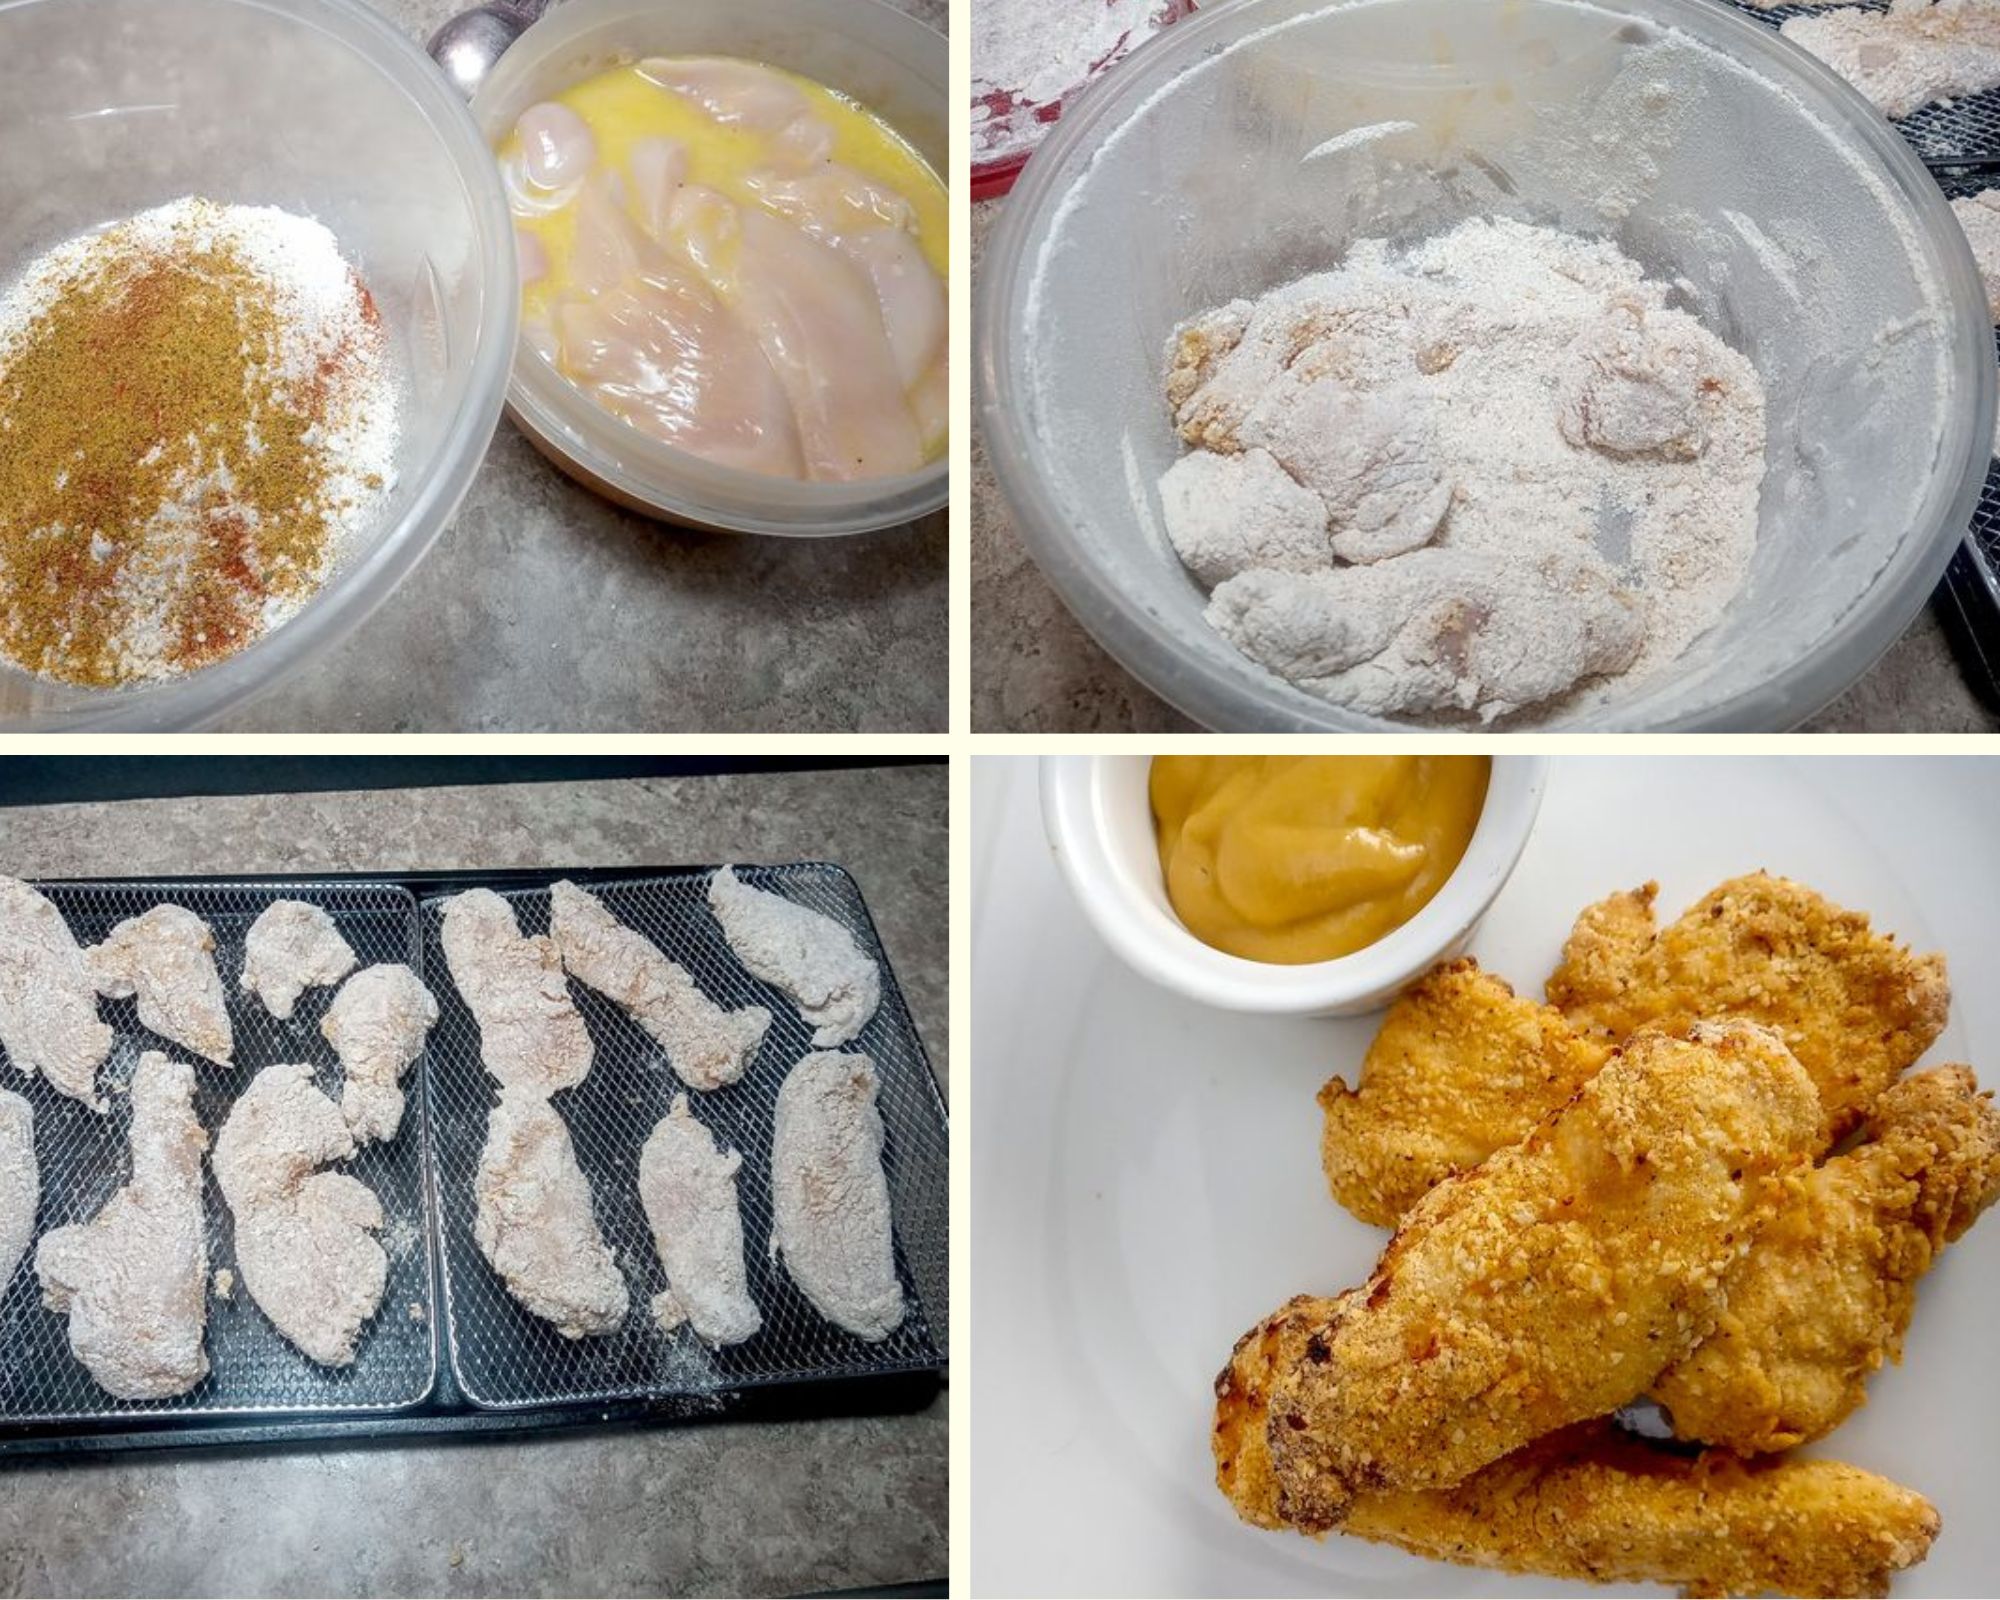 Test batch of floured chicken tenders